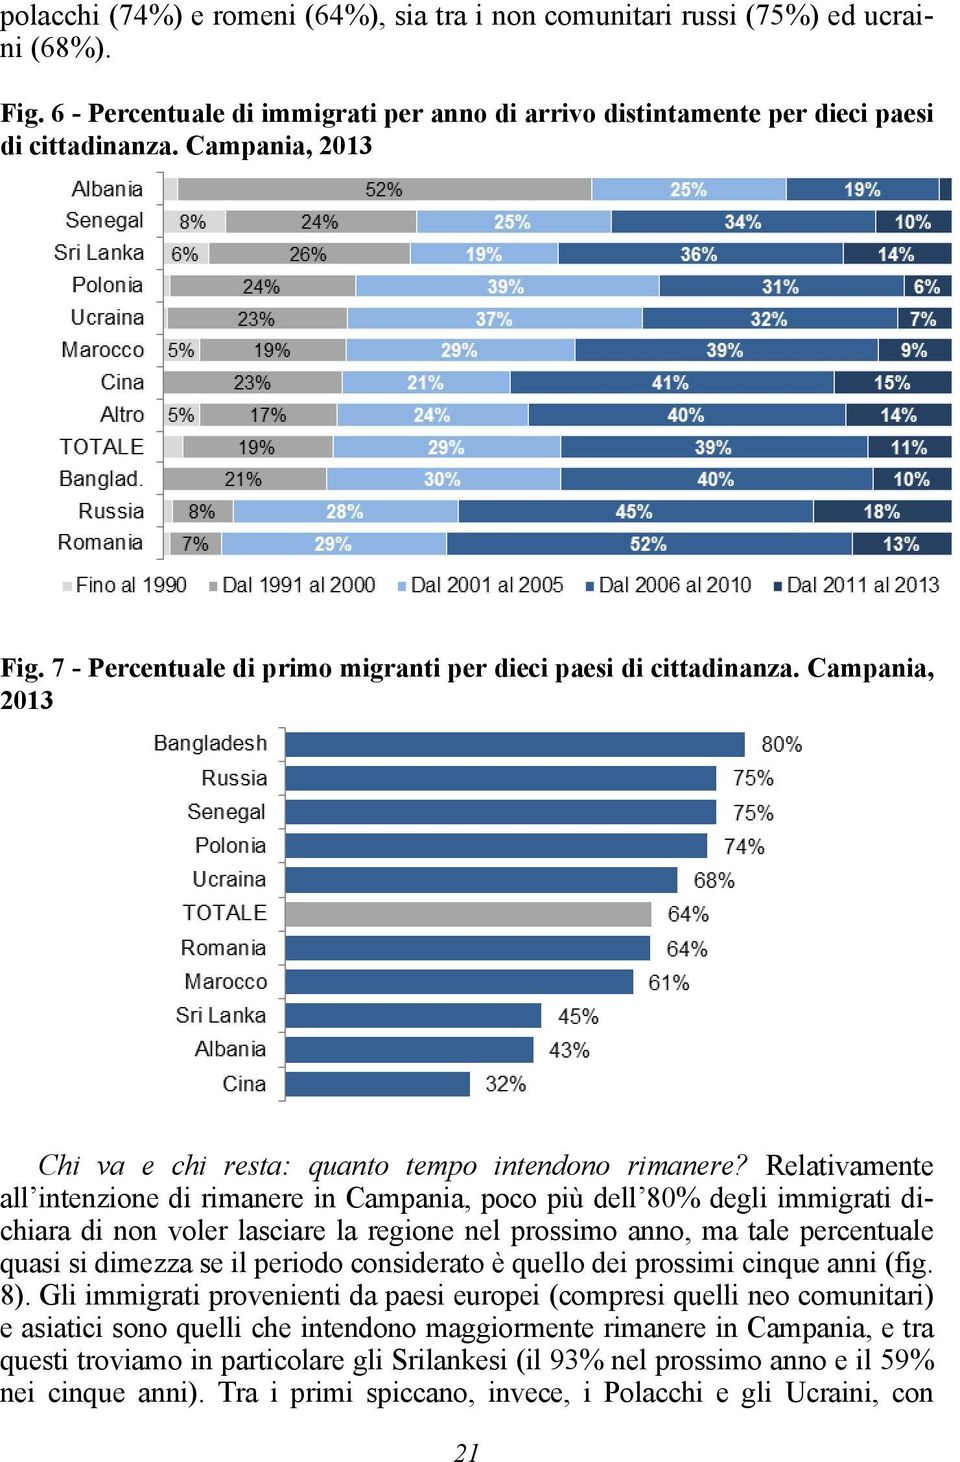 Relativamente all intenzione di rimanere in Campania, poco più dell 80% degli immigrati dichiara di non voler lasciare la regione nel prossimo anno, ma tale percentuale quasi si dimezza se il periodo